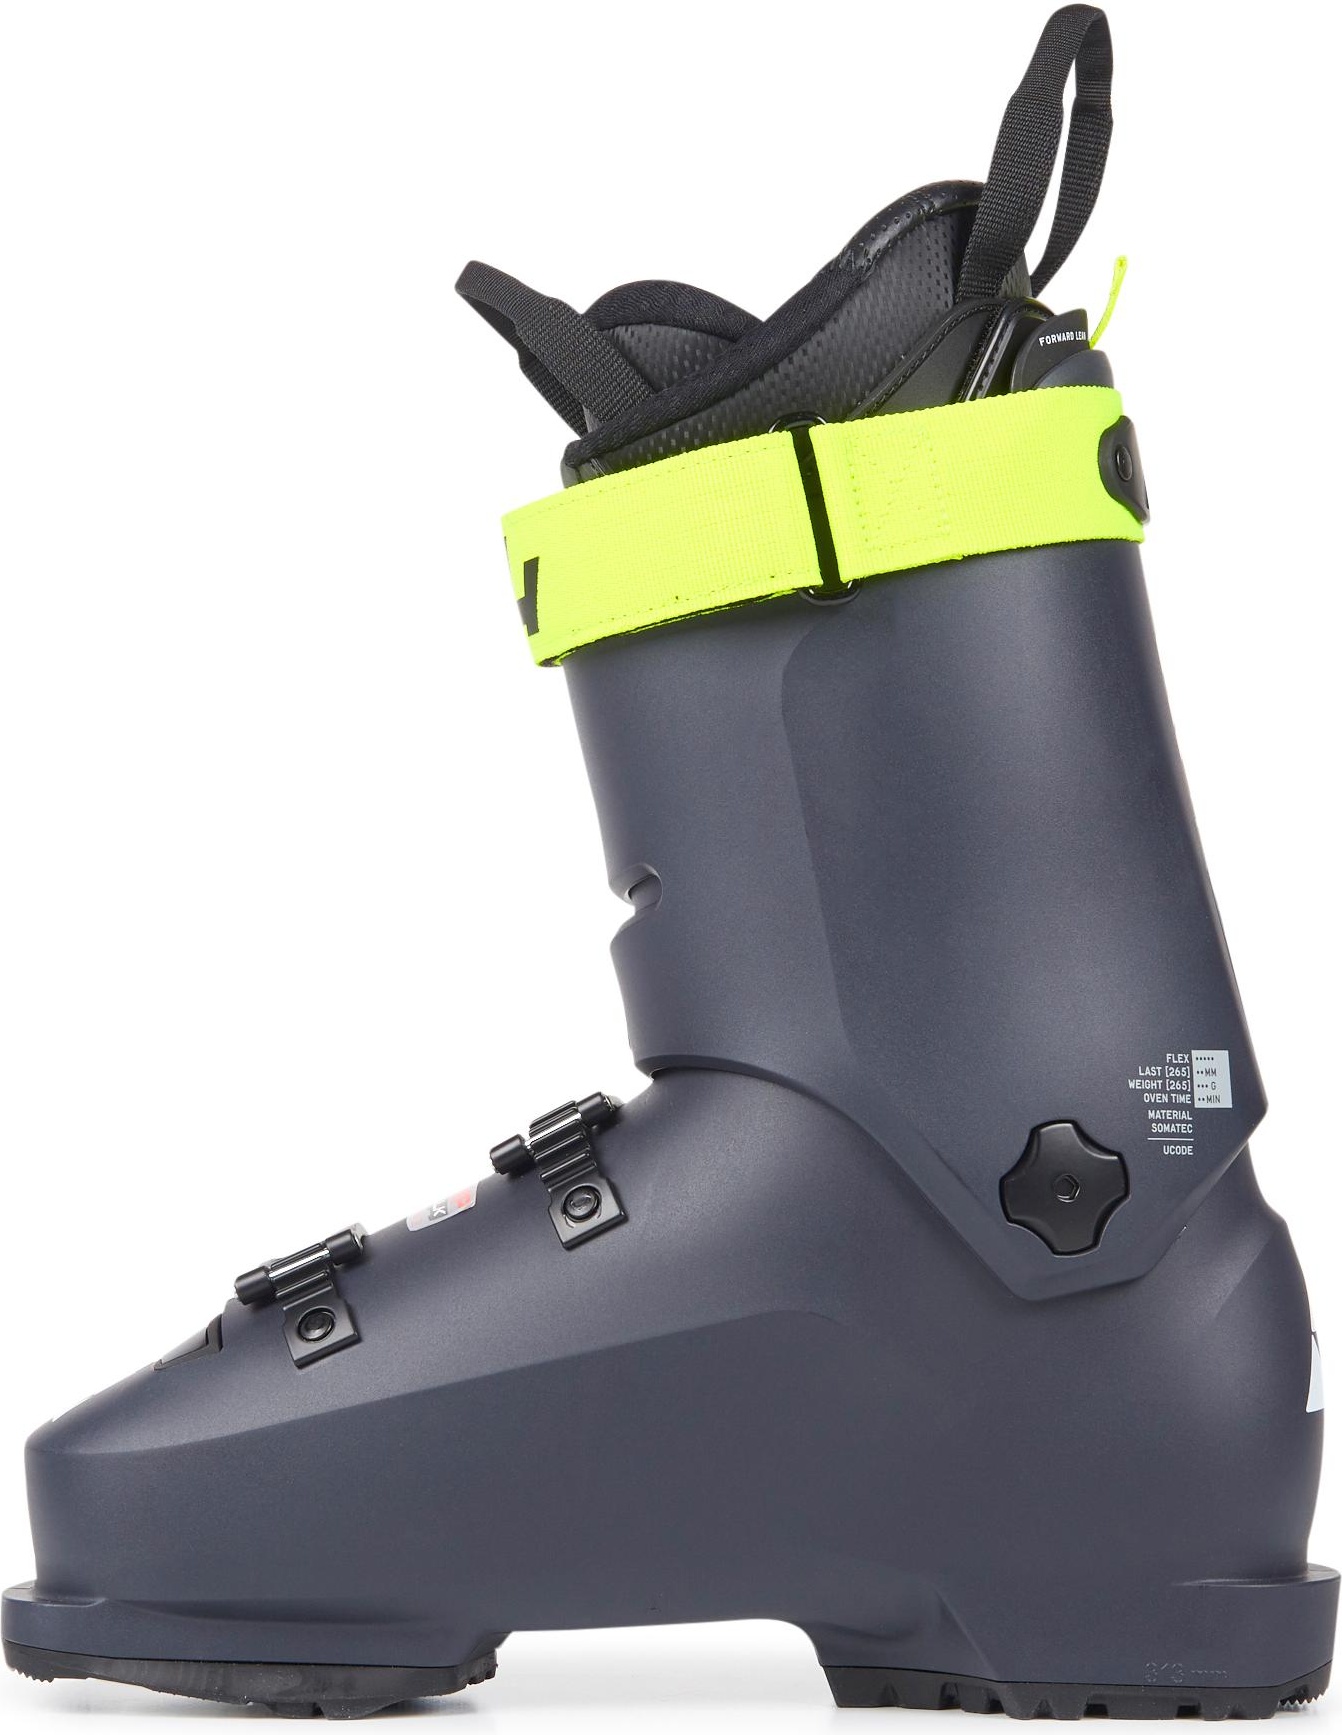 Горнолыжные ботинки Fischer Rc4 The Curv Gt 110 Vacuum Walk 2021, darkgrey/darkgrey, 28.5